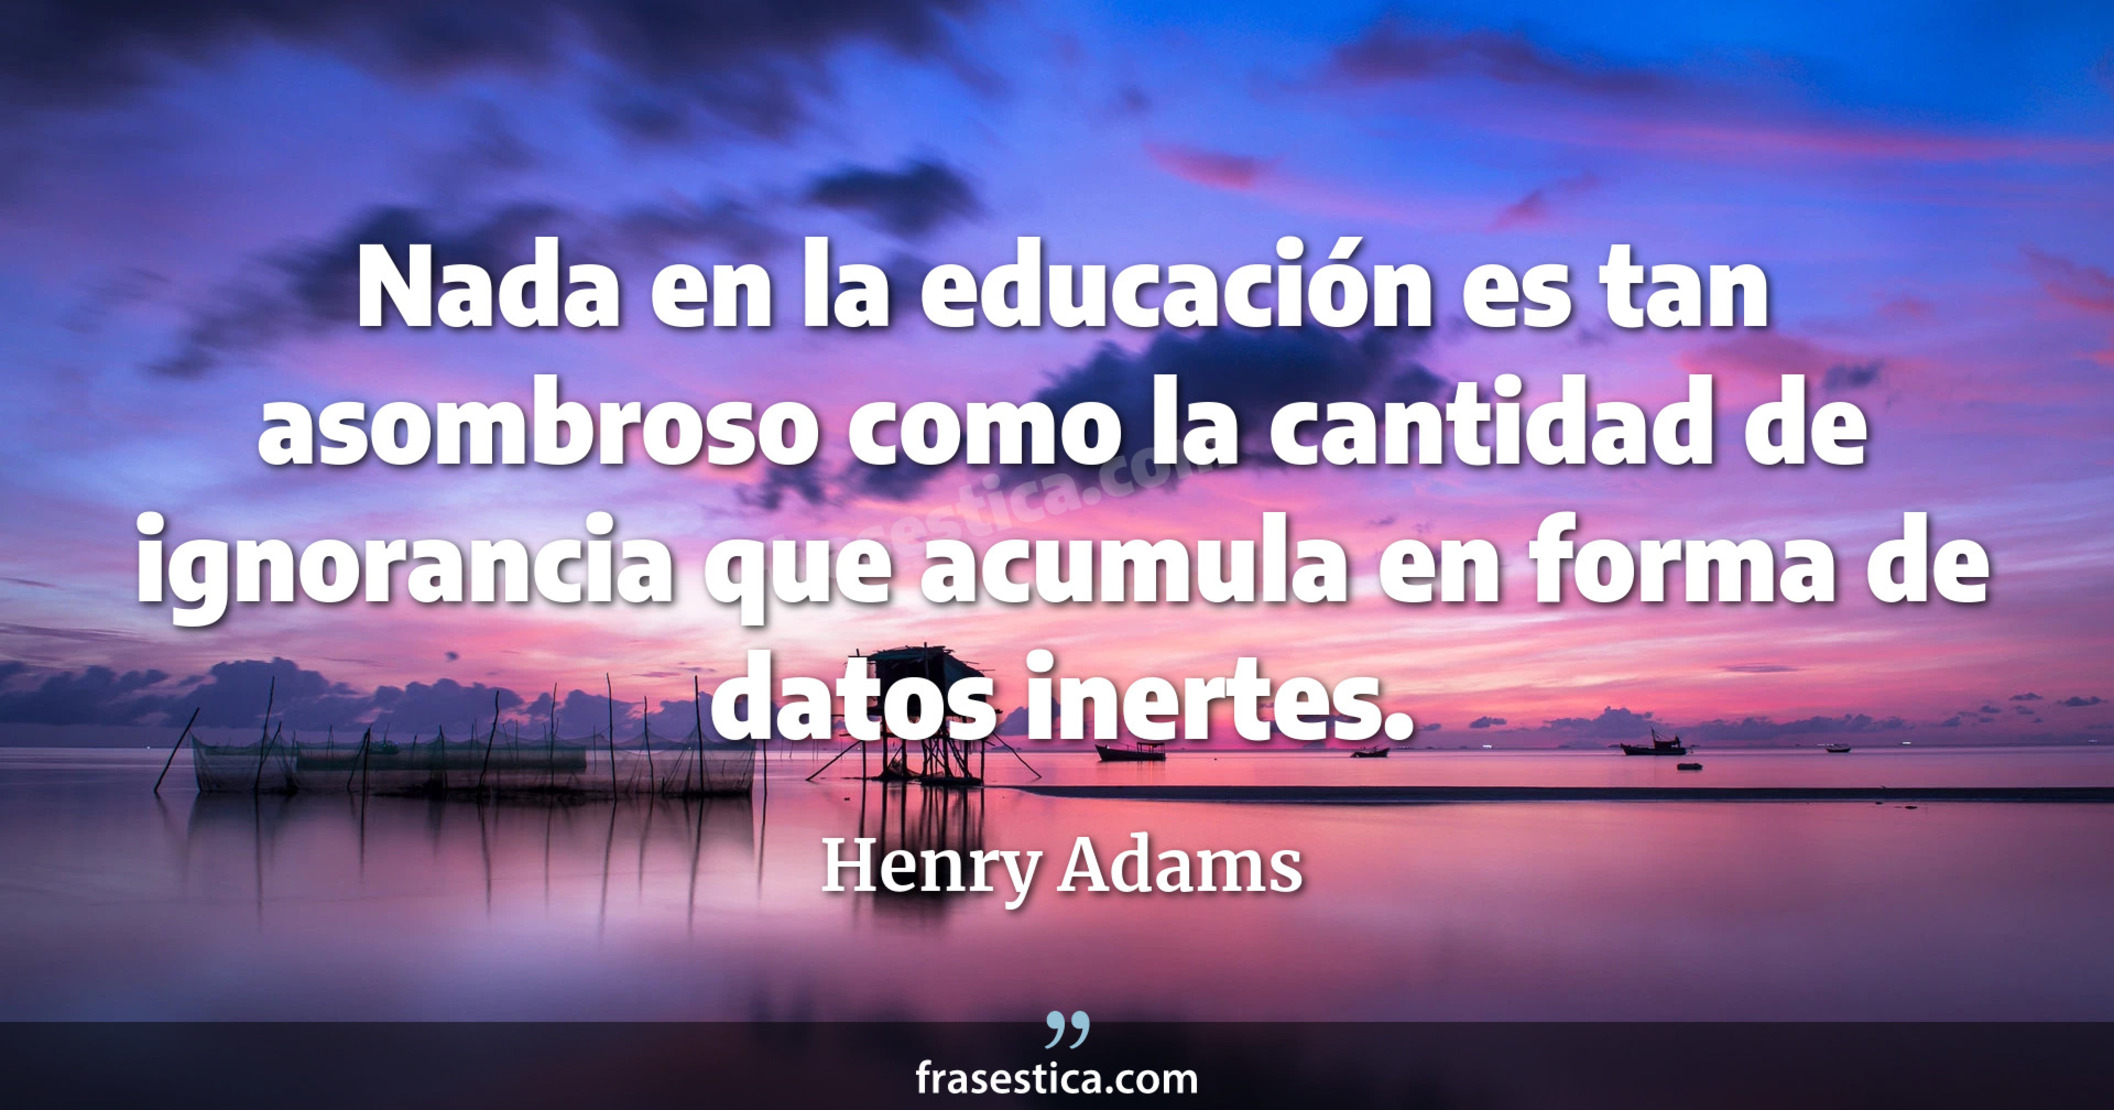 Nada en la educación es tan asombroso como la cantidad de ignorancia que acumula en forma de datos inertes. - Henry Adams